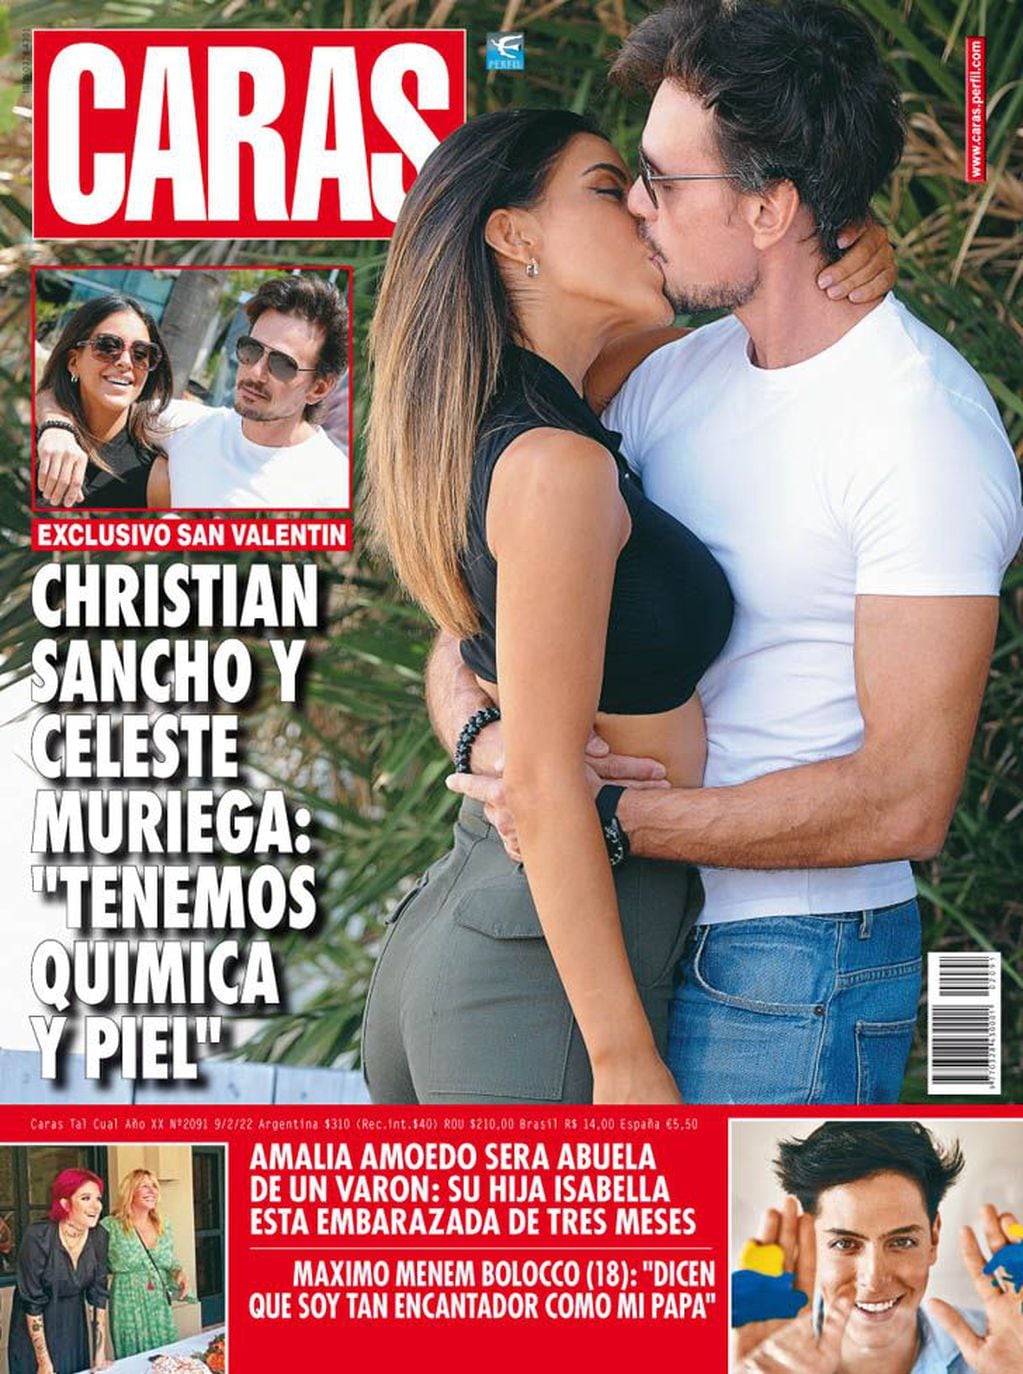 Celeste Muriega y Christian Sancho confirmaron su relación en revista Caras.